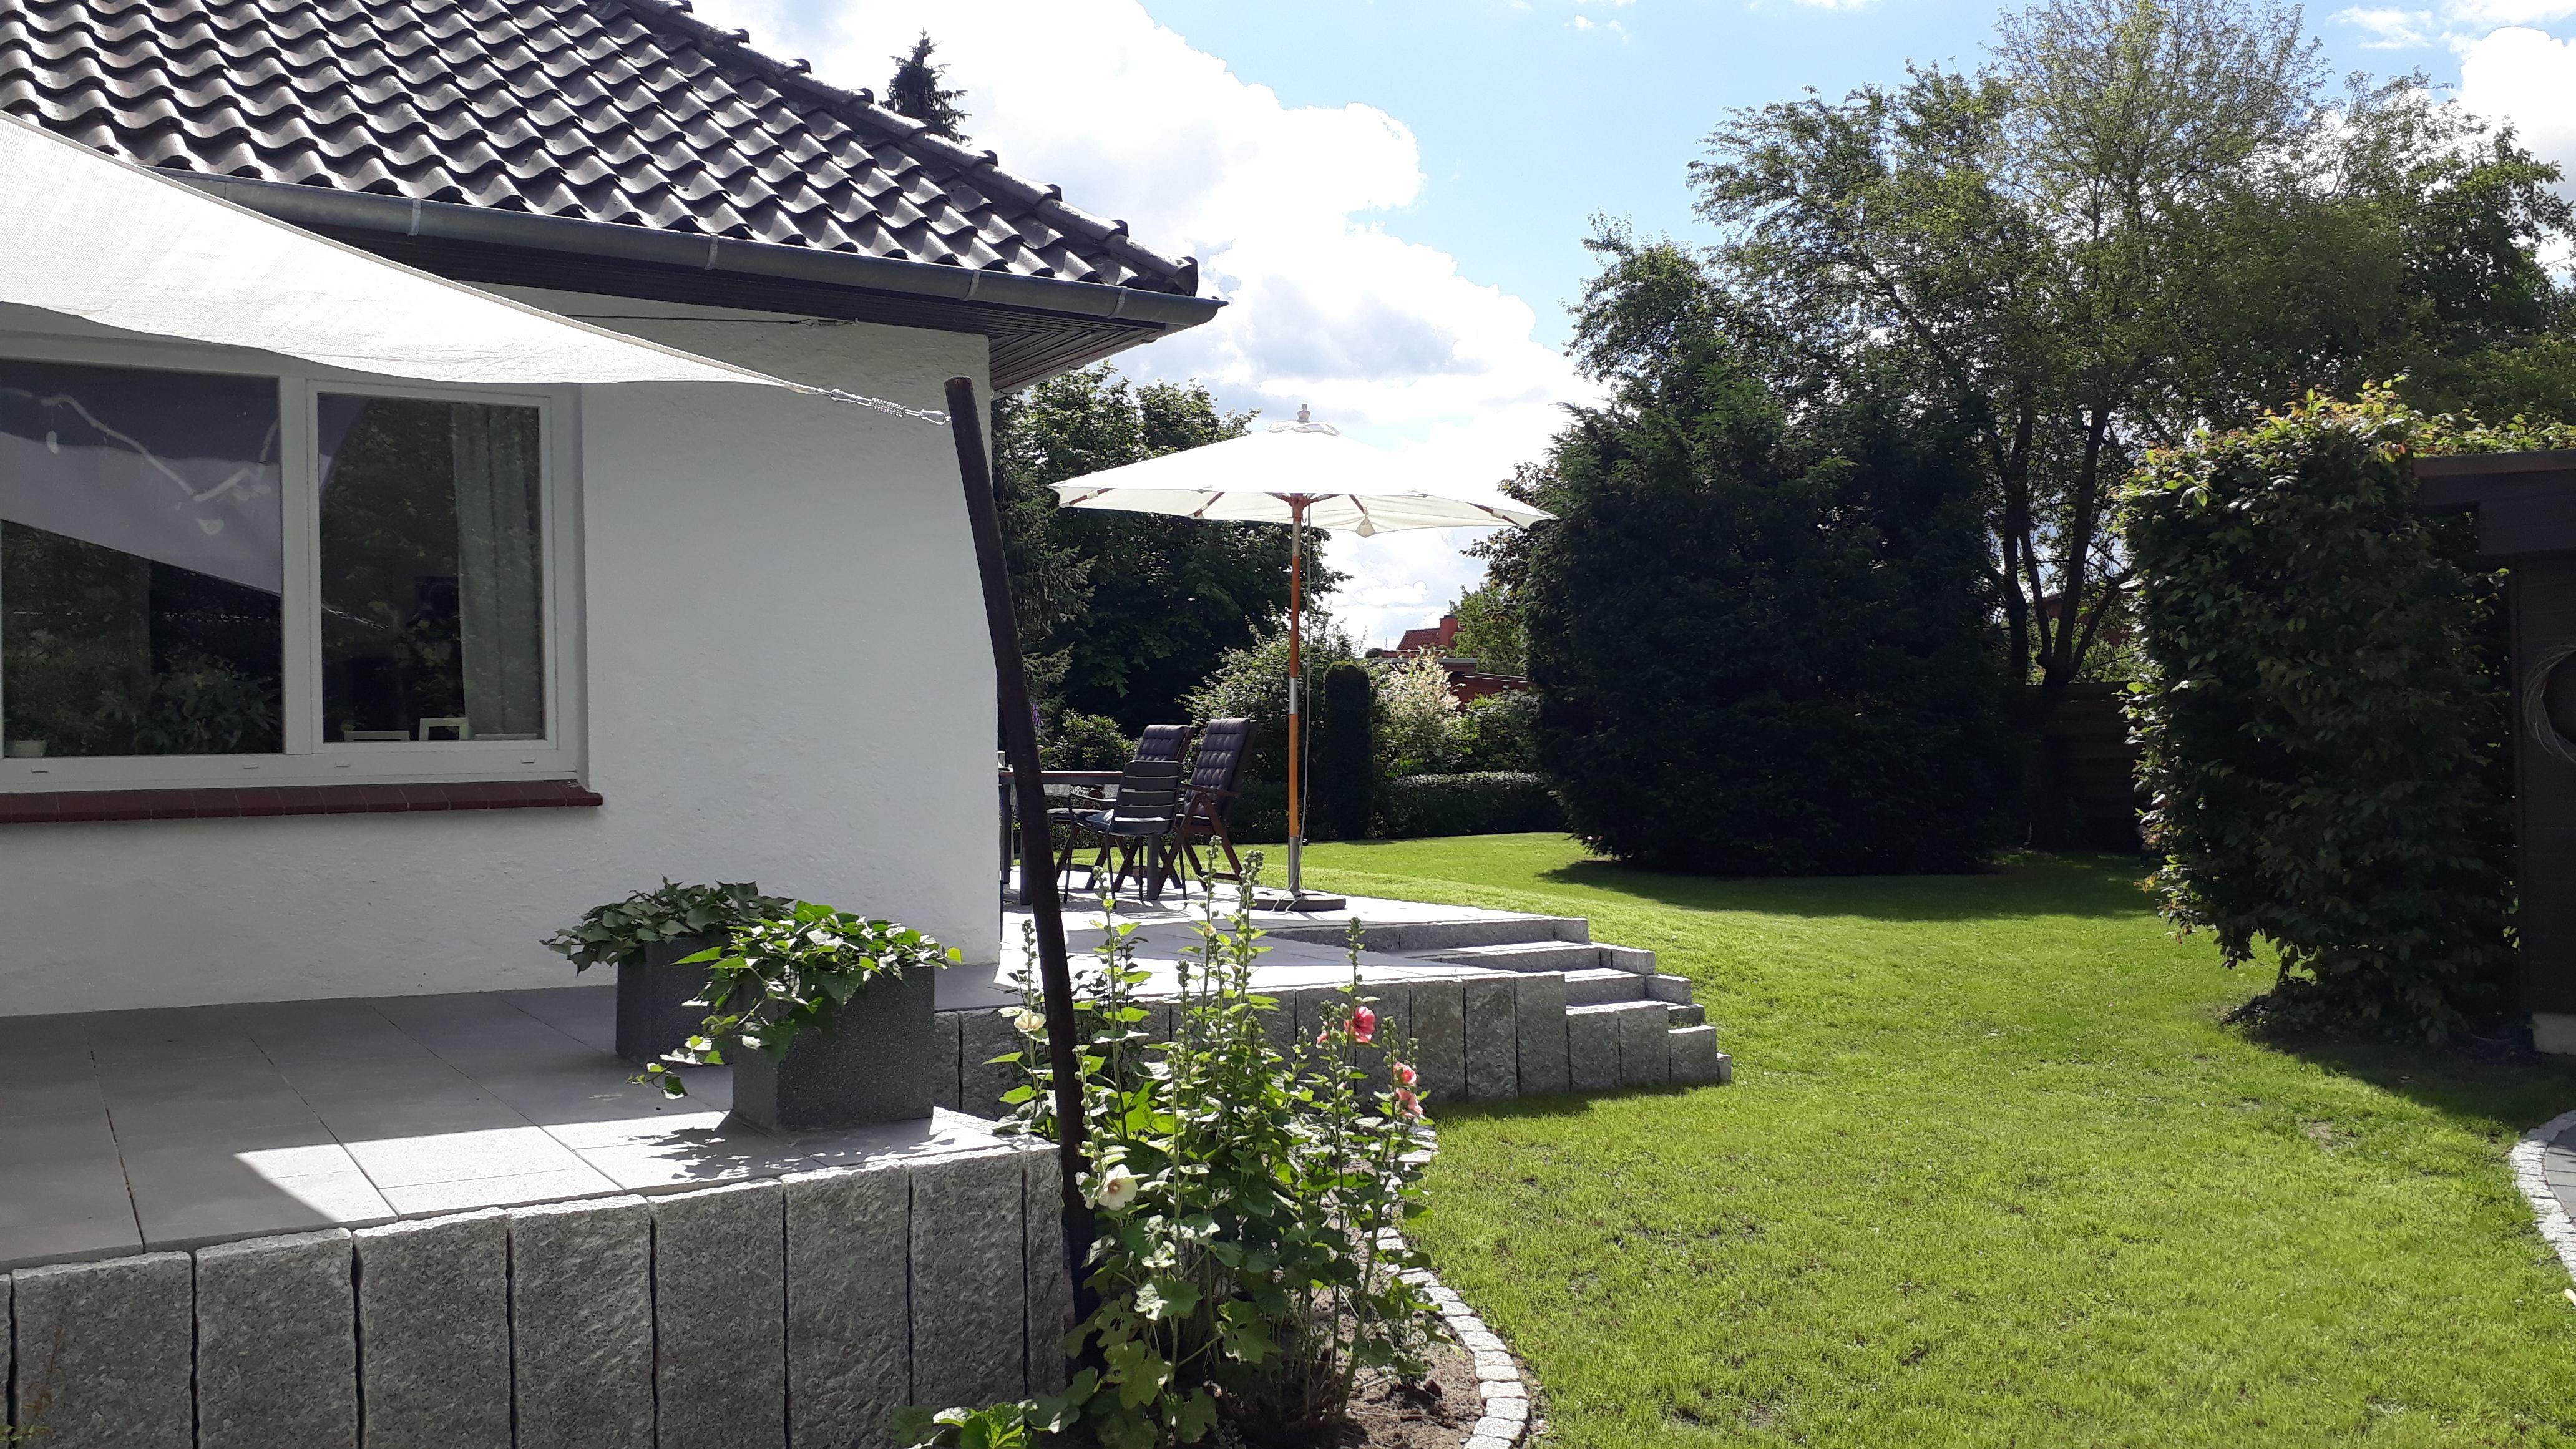 Jetzt fehlen nur noch ein paar Möbel, Pflanzen auf/neben der großen Terrasse und ein Gartenhaus! #Terrasse #Garten